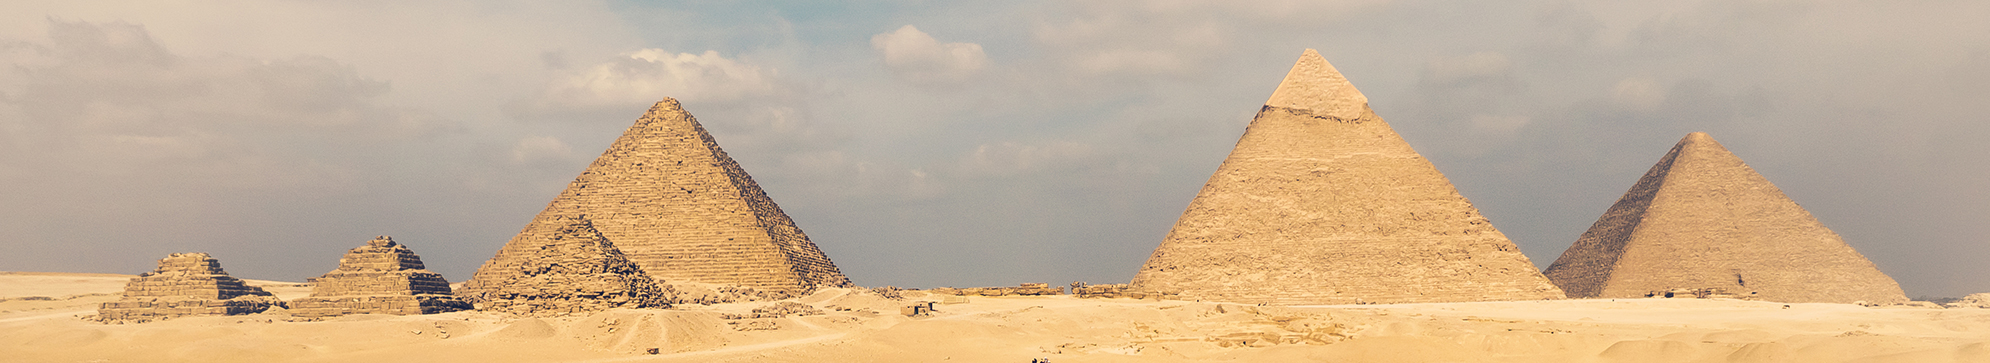 BEST OF EGYPT